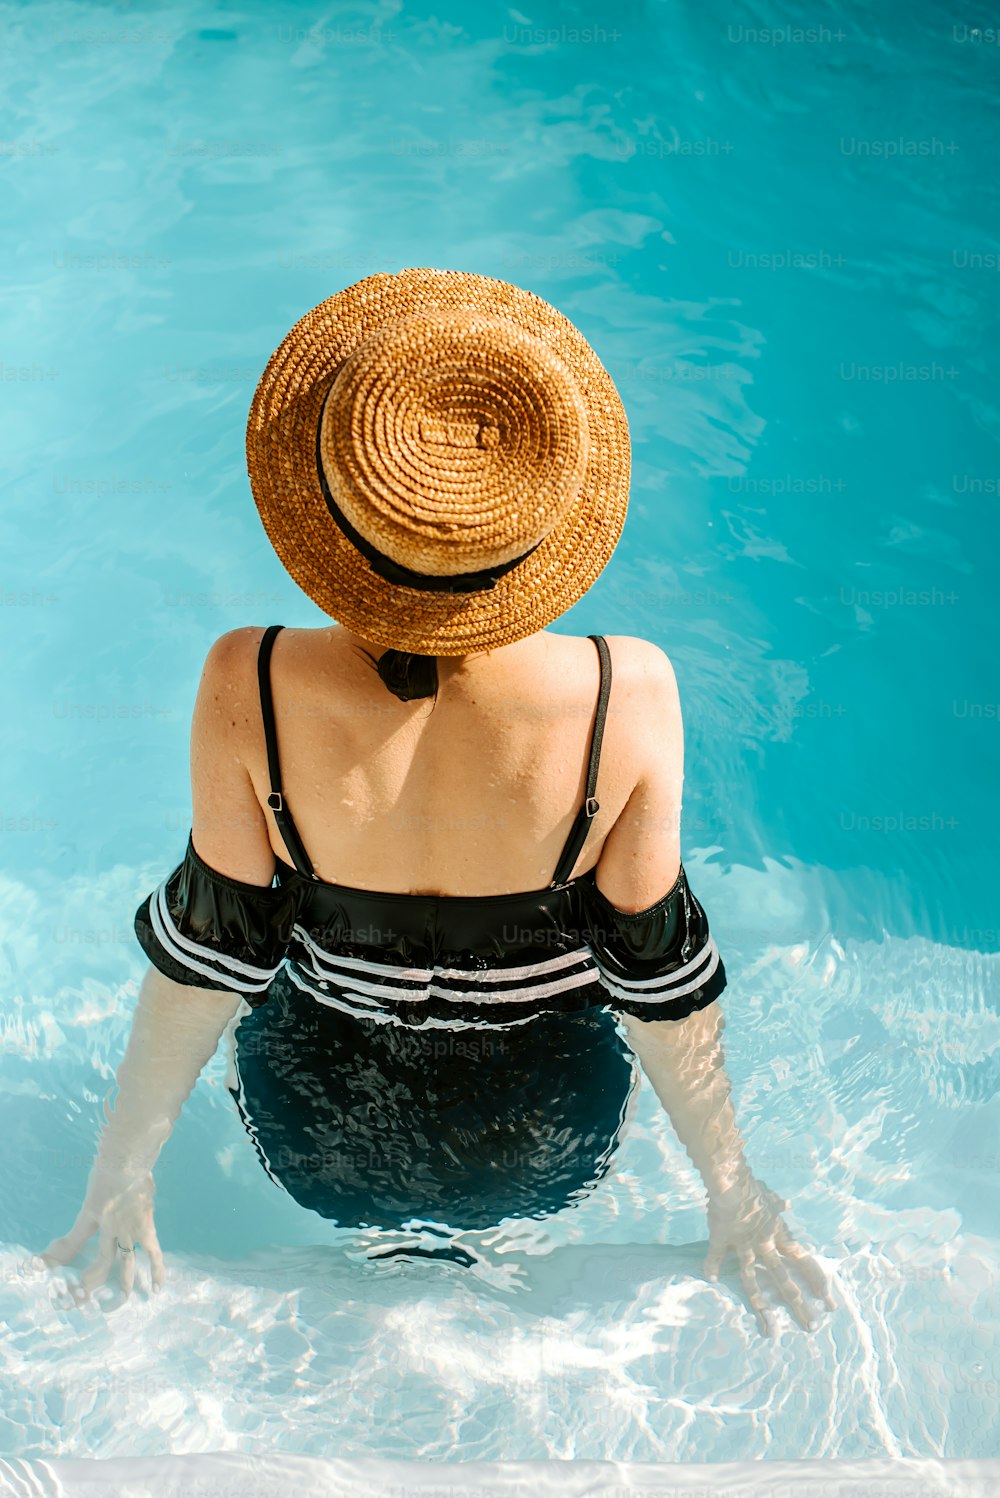 Une femme coiffée d’un chapeau de paille assise dans une piscine